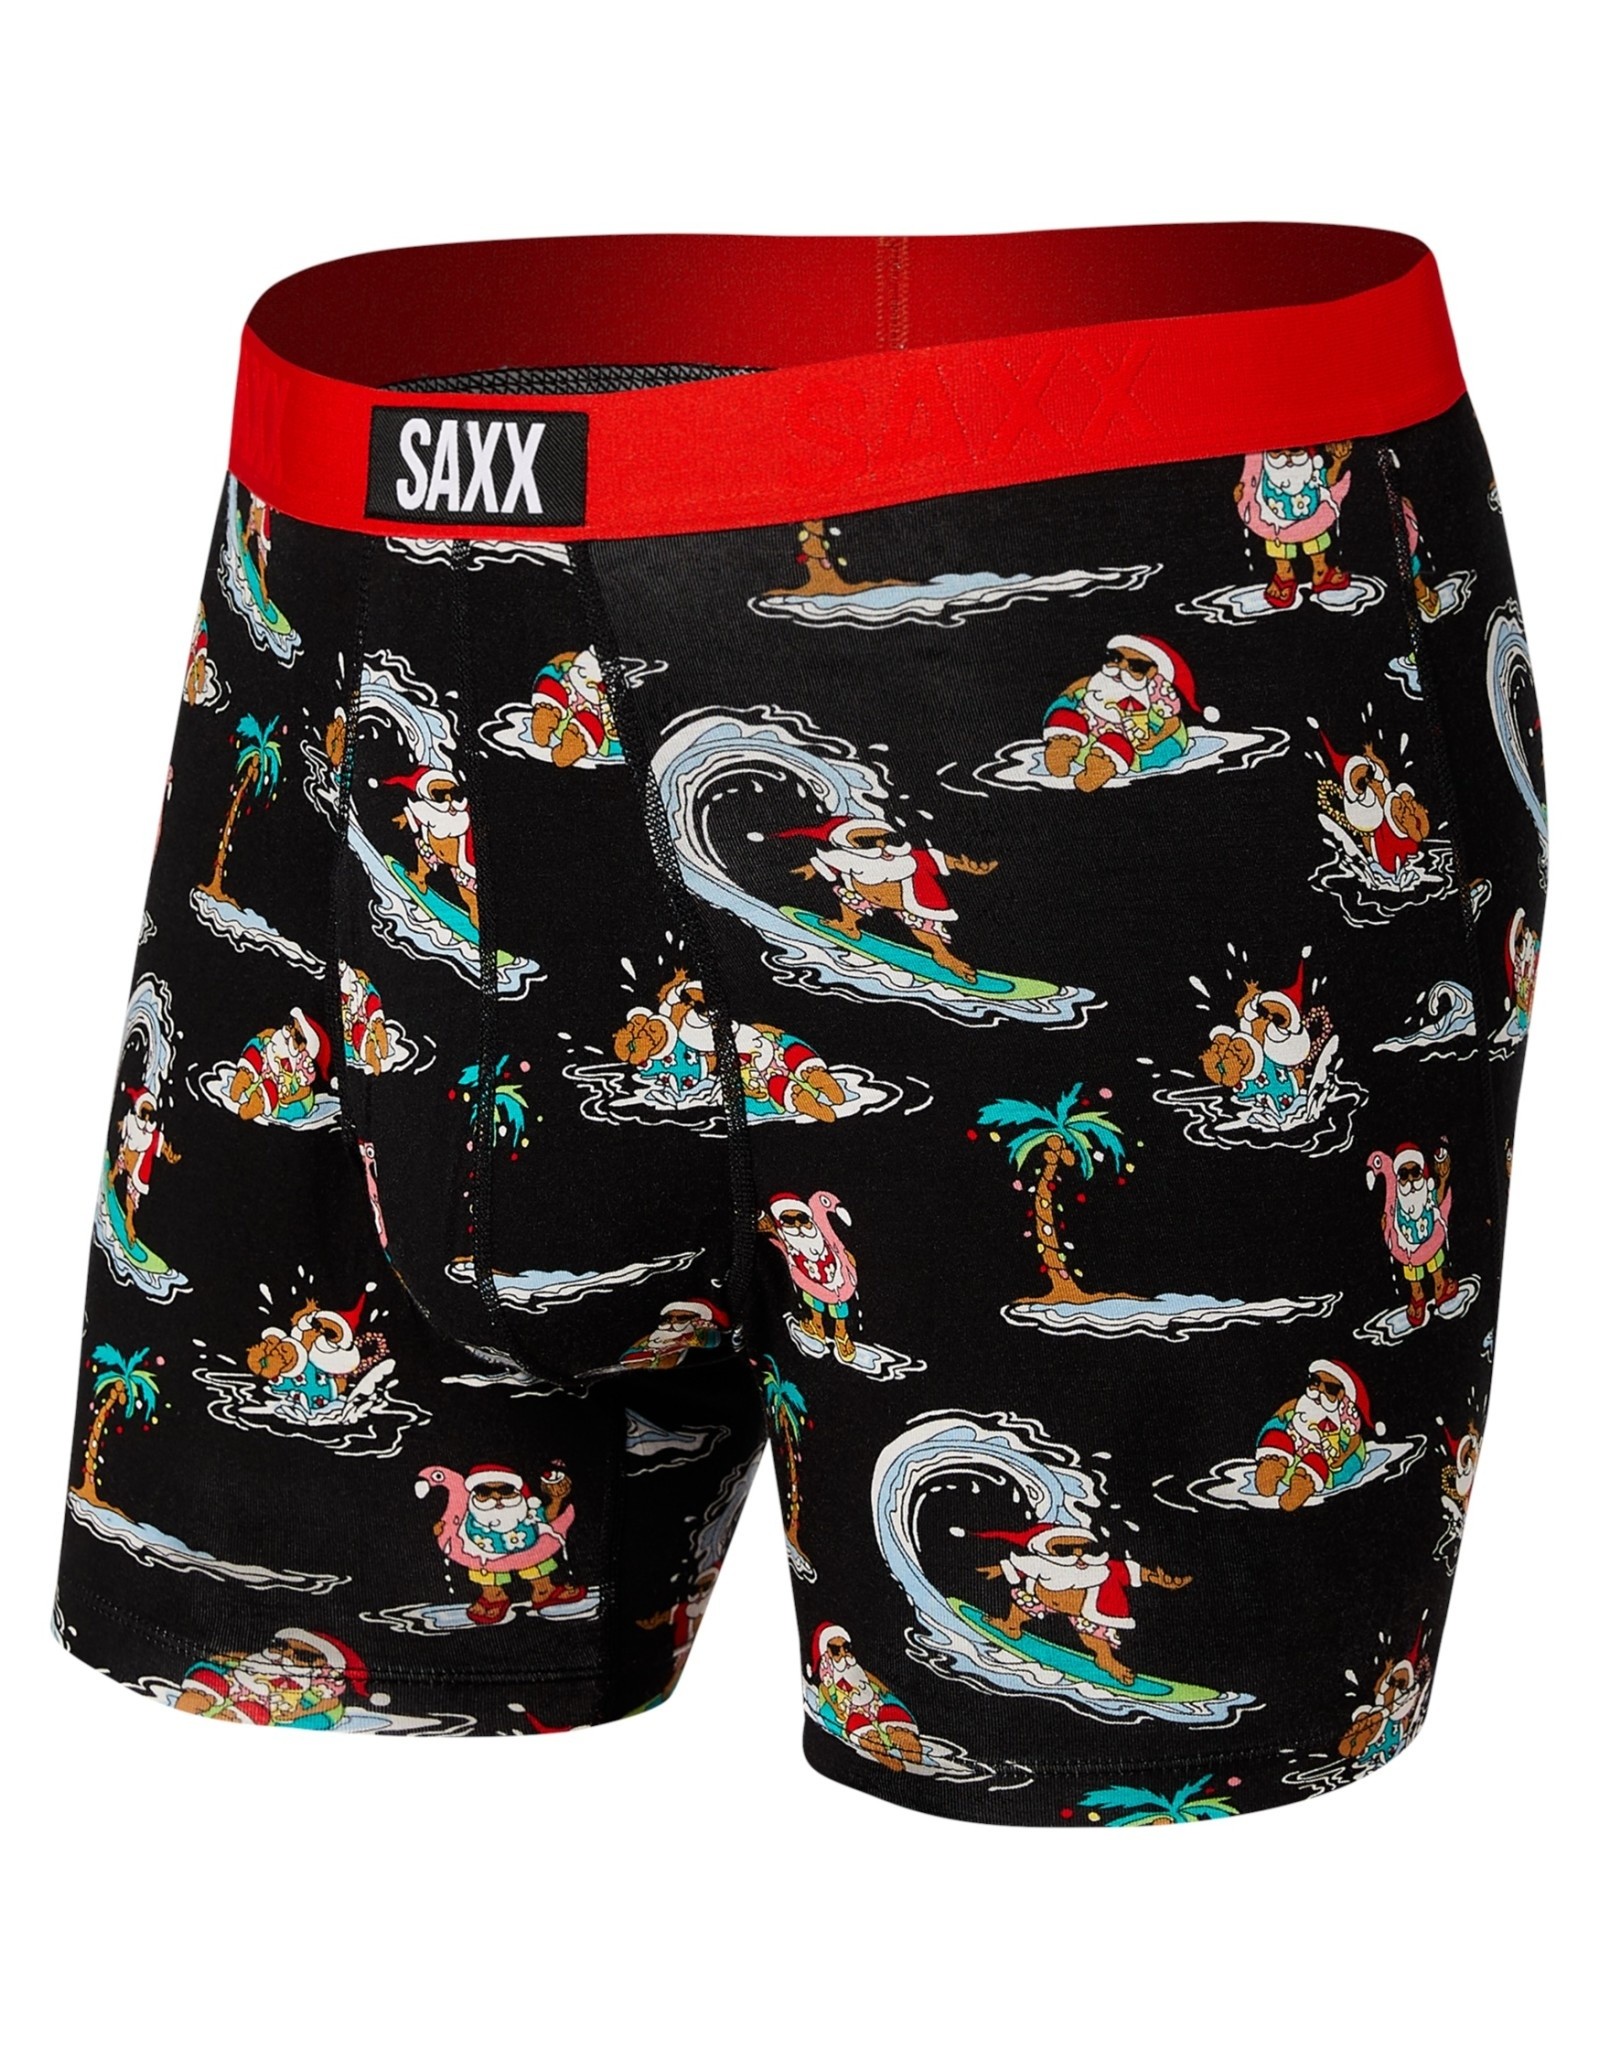 Saxx Saxx Ultra - Boxer Brief SXBB30F Men’s